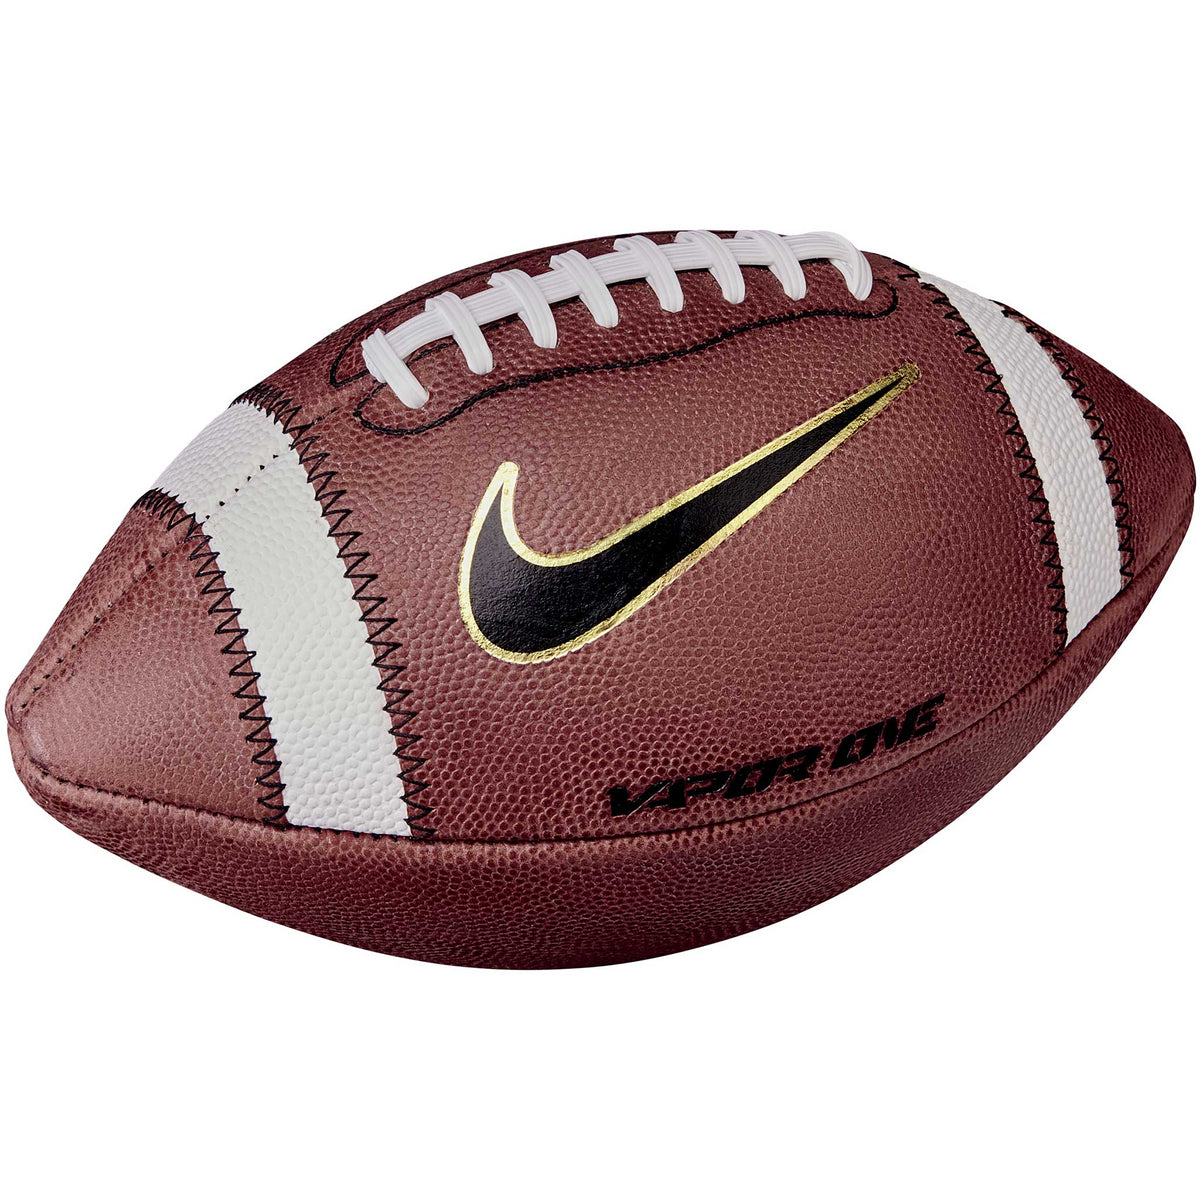 Nike Vapor One 2.0 ballon de football - Brown / White / Metallic Gold / Black - 9 (official)